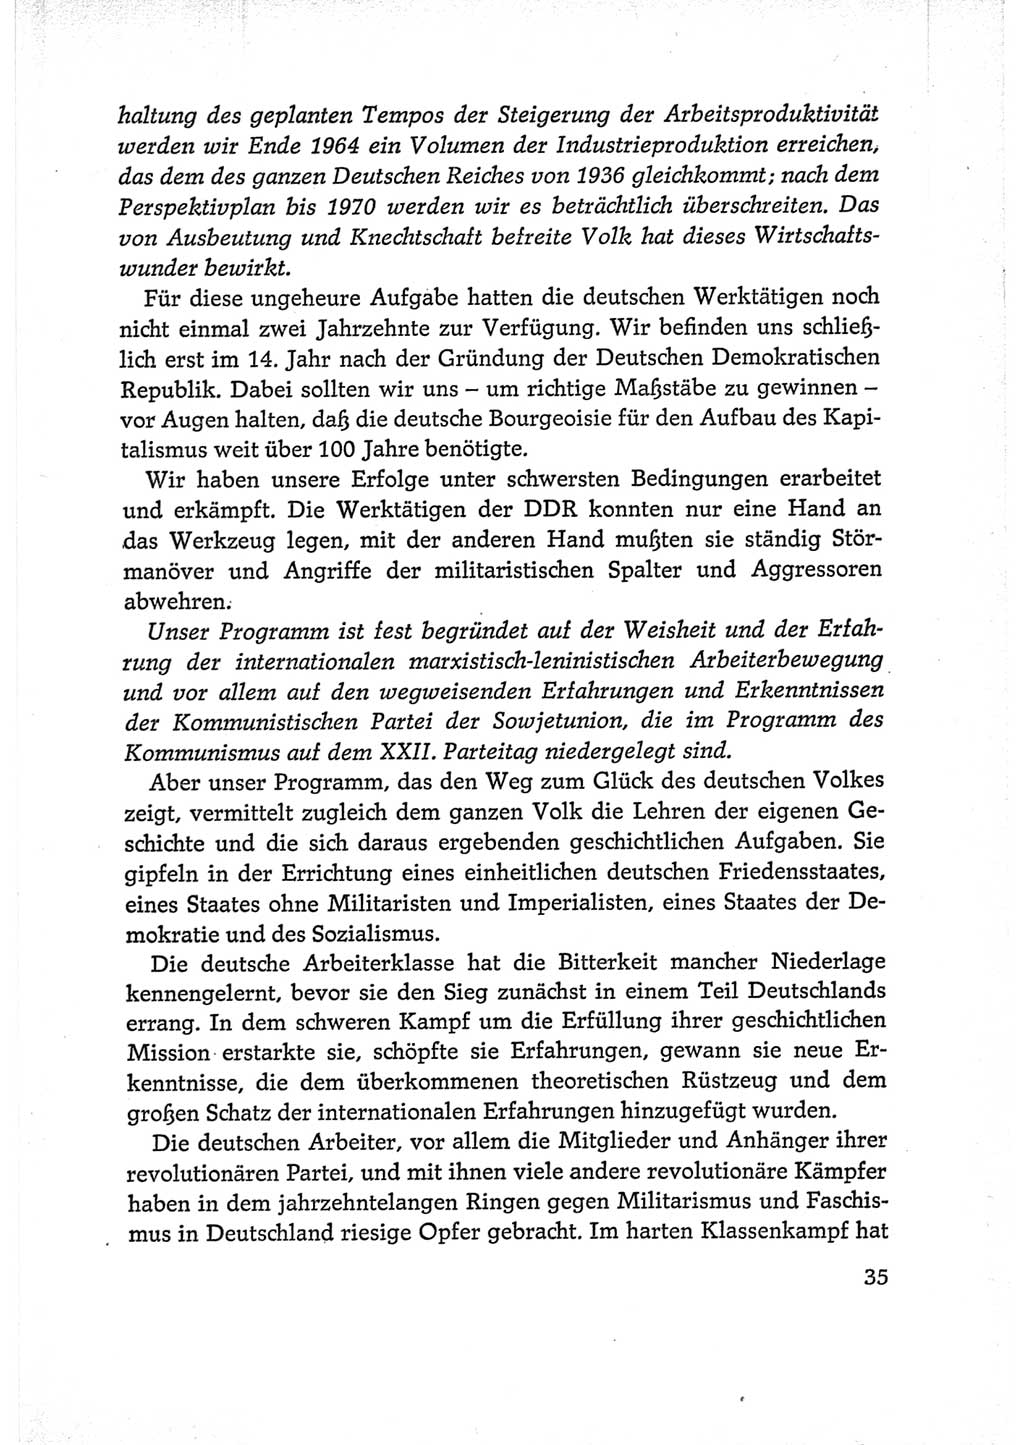 Protokoll der Verhandlungen des Ⅵ. Parteitages der Sozialistischen Einheitspartei Deutschlands (SED) [Deutsche Demokratische Republik (DDR)] 1963, Band Ⅰ, Seite 35 (Prot. Verh. Ⅵ. PT SED DDR 1963, Bd. Ⅰ, S. 35)